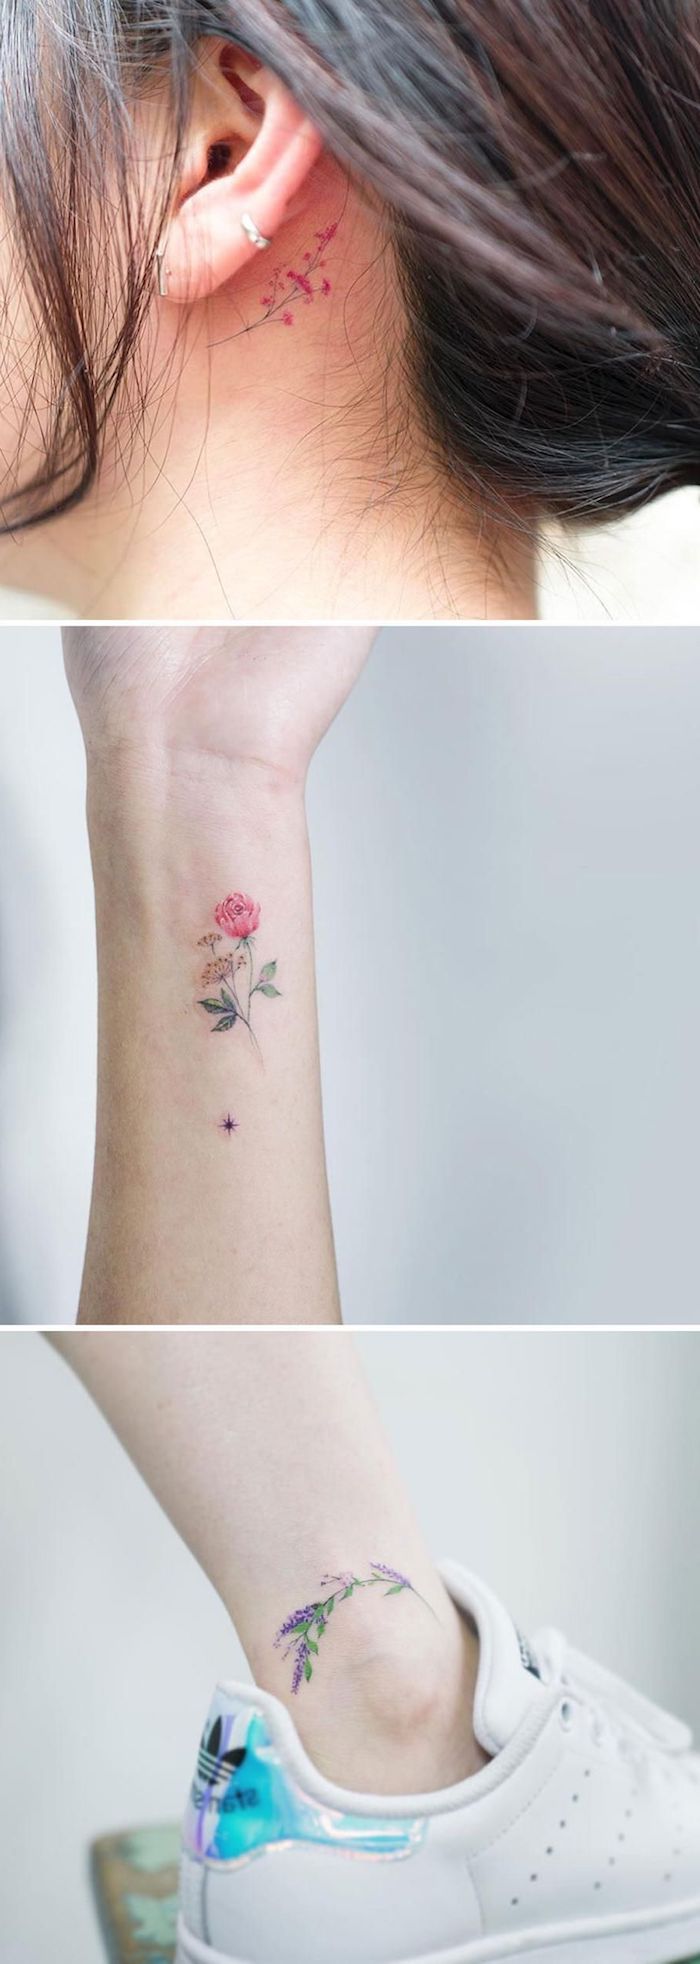 tattoo hinterm ohr mit einer kleinen violetten blume, ein bein mit einem weißen schuh, eine hand mit einem kleinen tattoo mit einer roten rose und grünen blätern